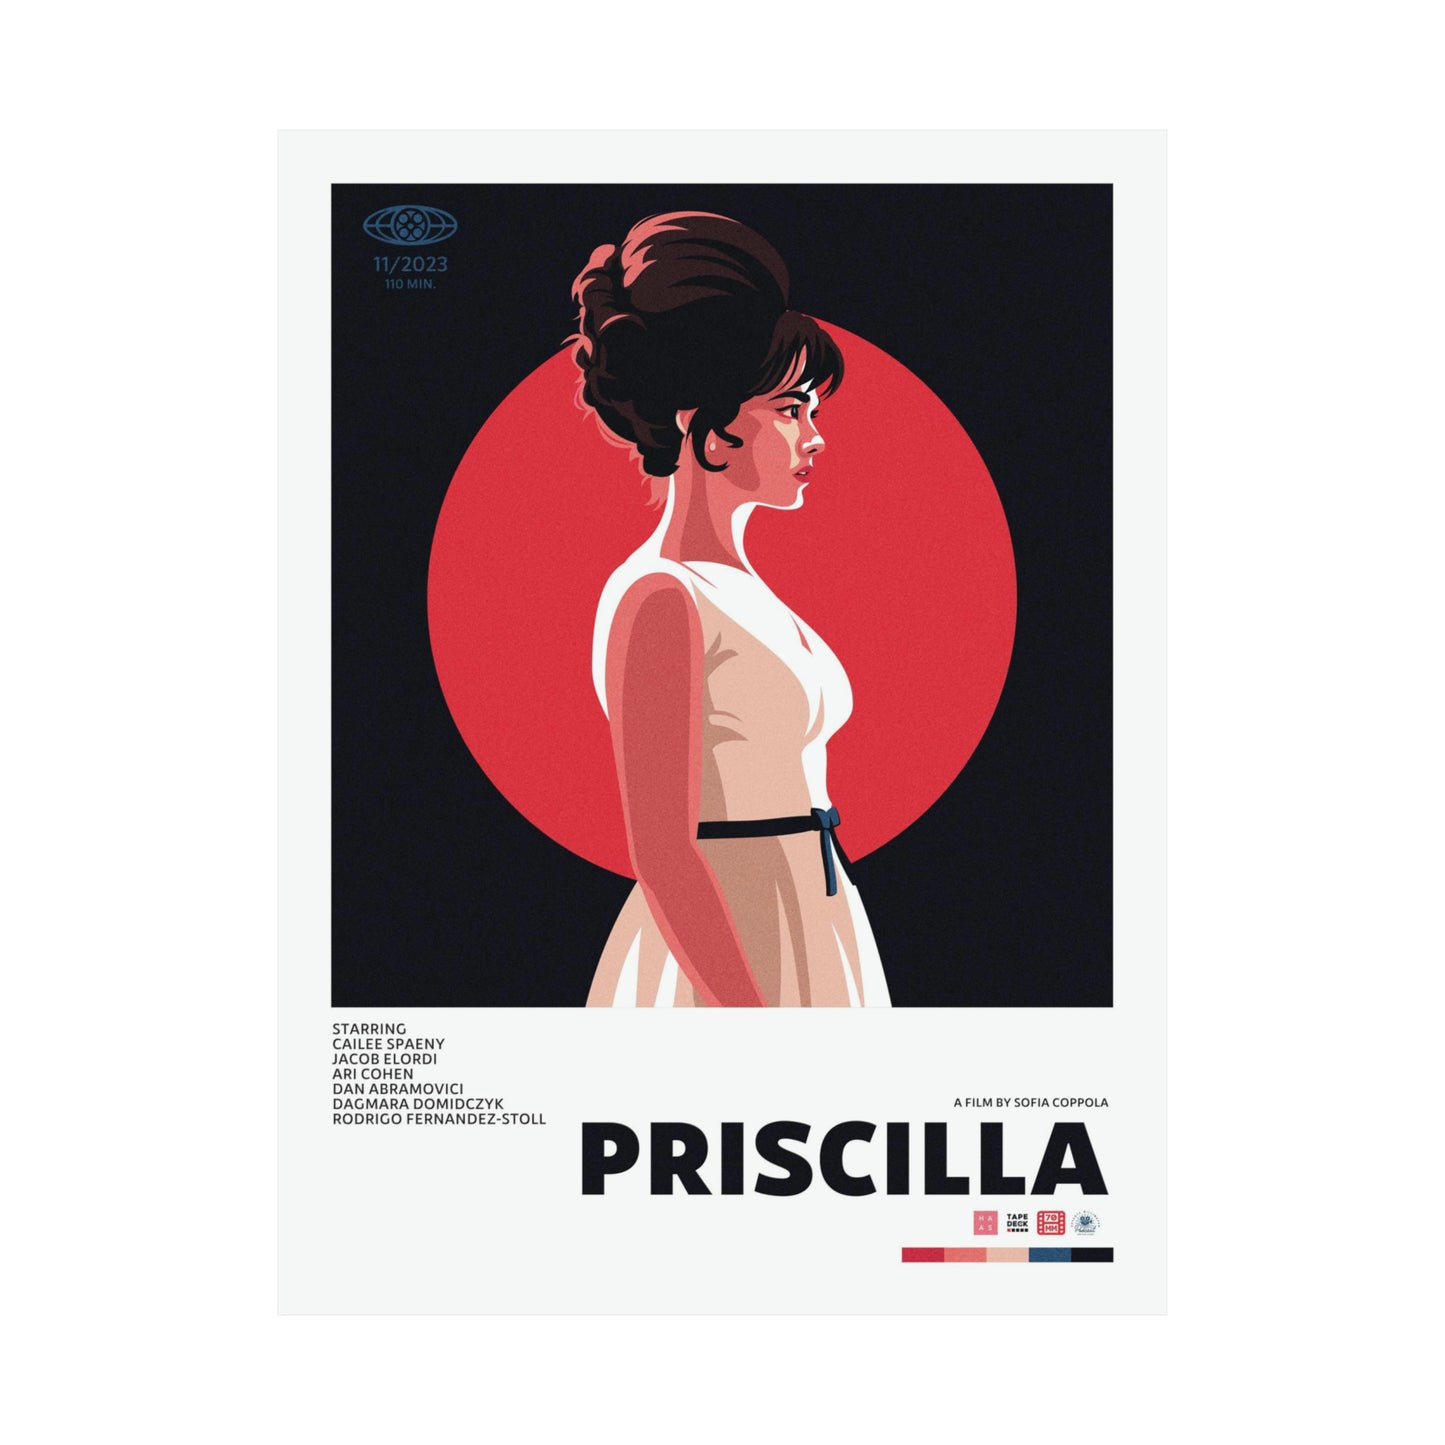 Episode 196: Priscilla